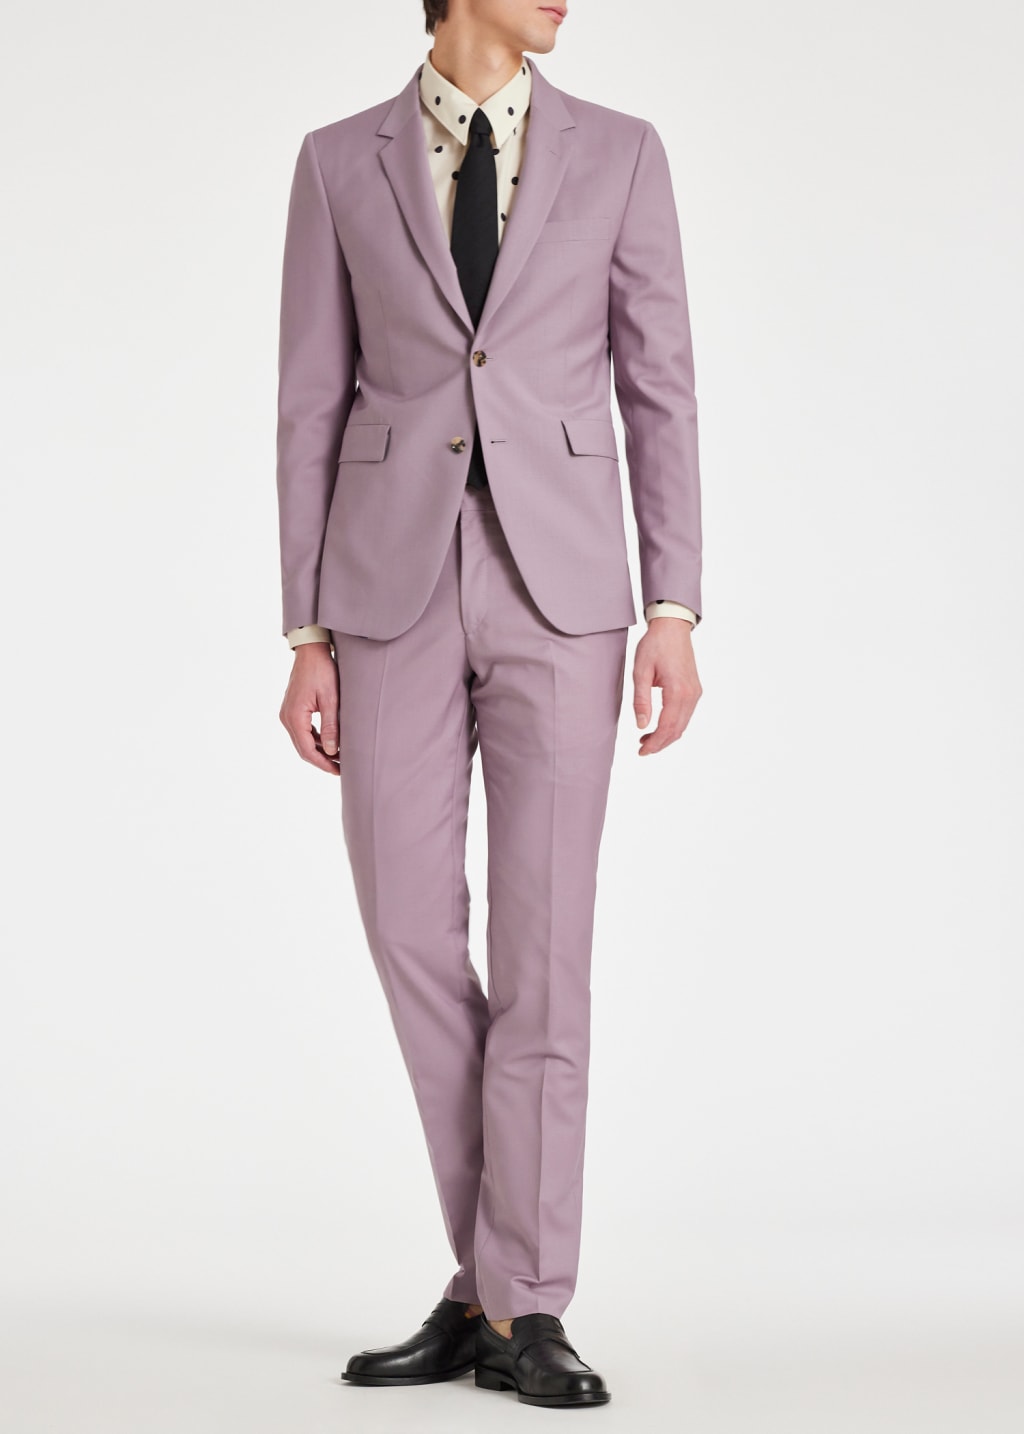 Model View - The Kensington - Slim-Fit Lavender Wool-Mohair Suit Paul Smith